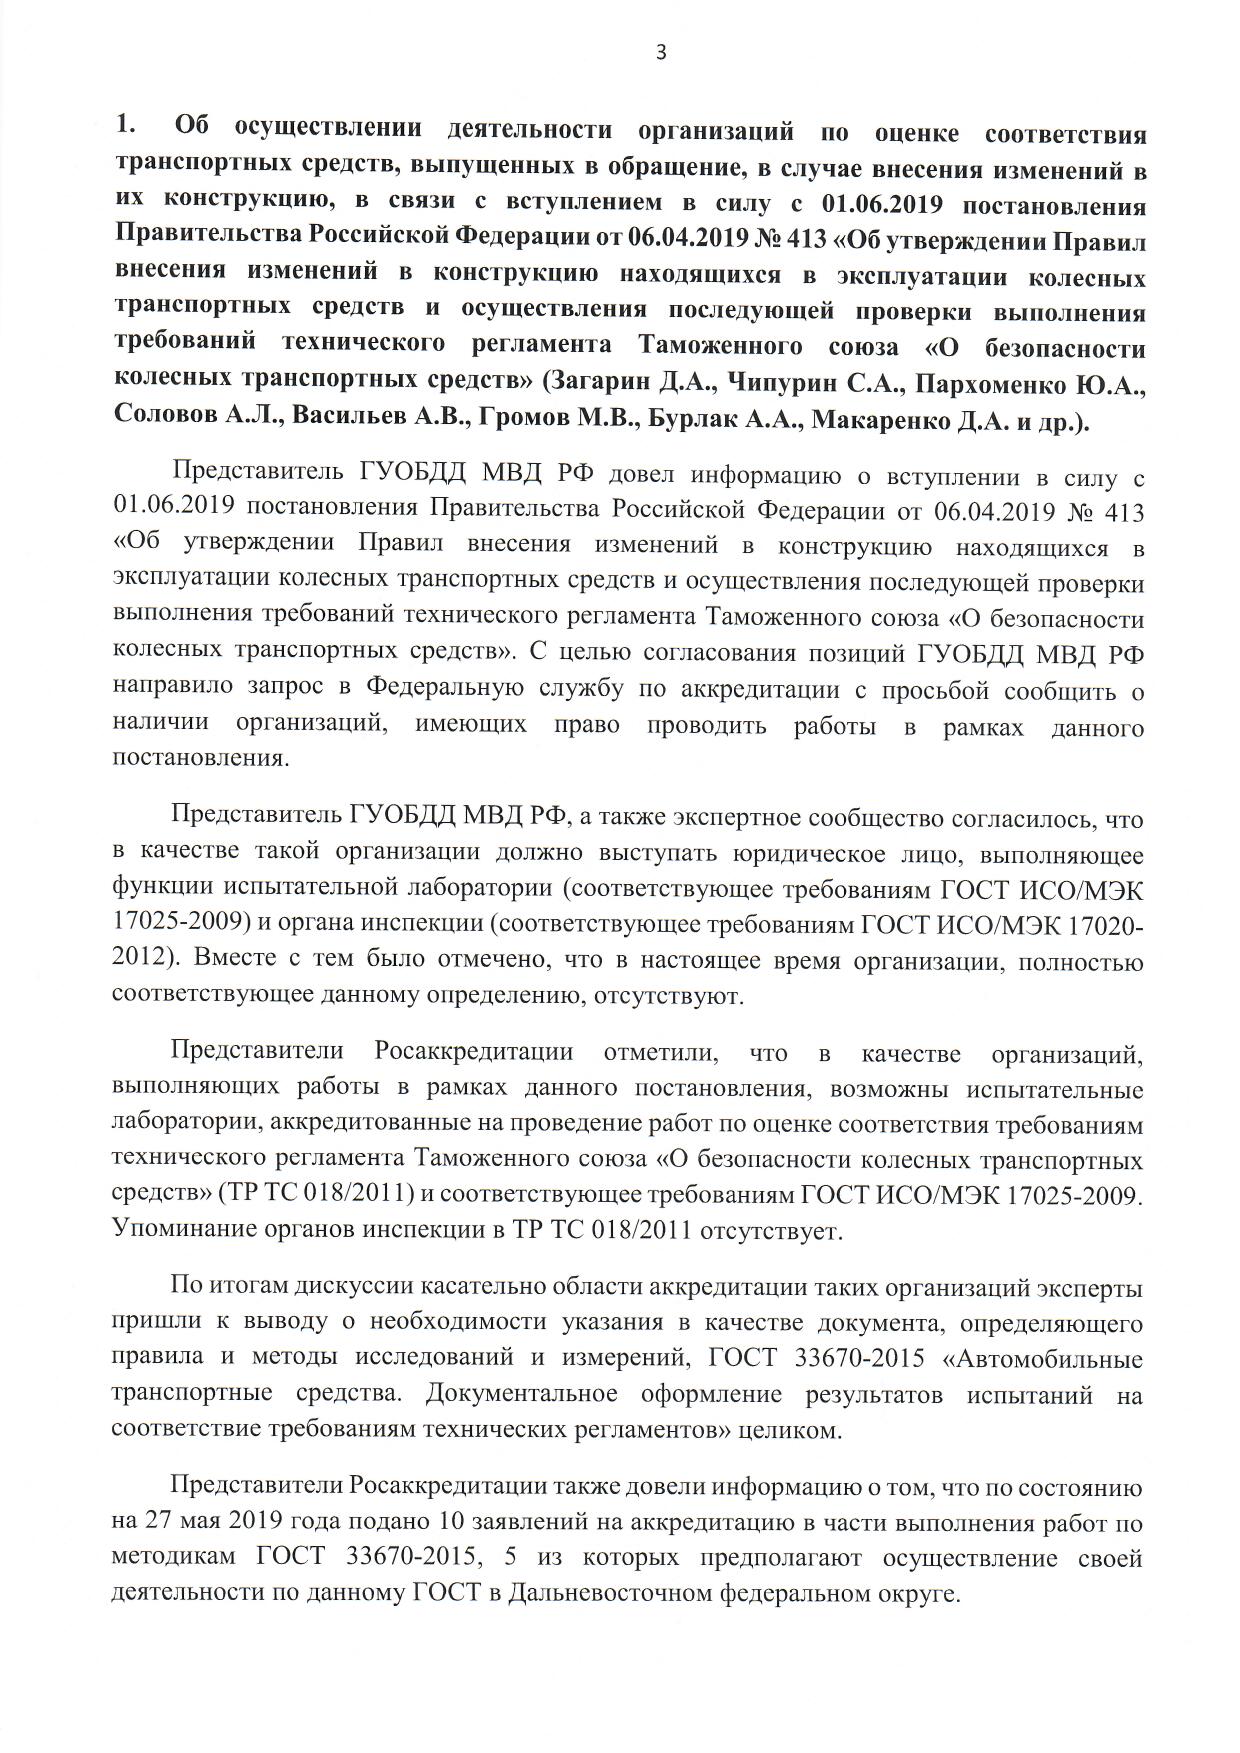 Рабочая группа при ФСА 27.05.2019 Постановление правительства 413